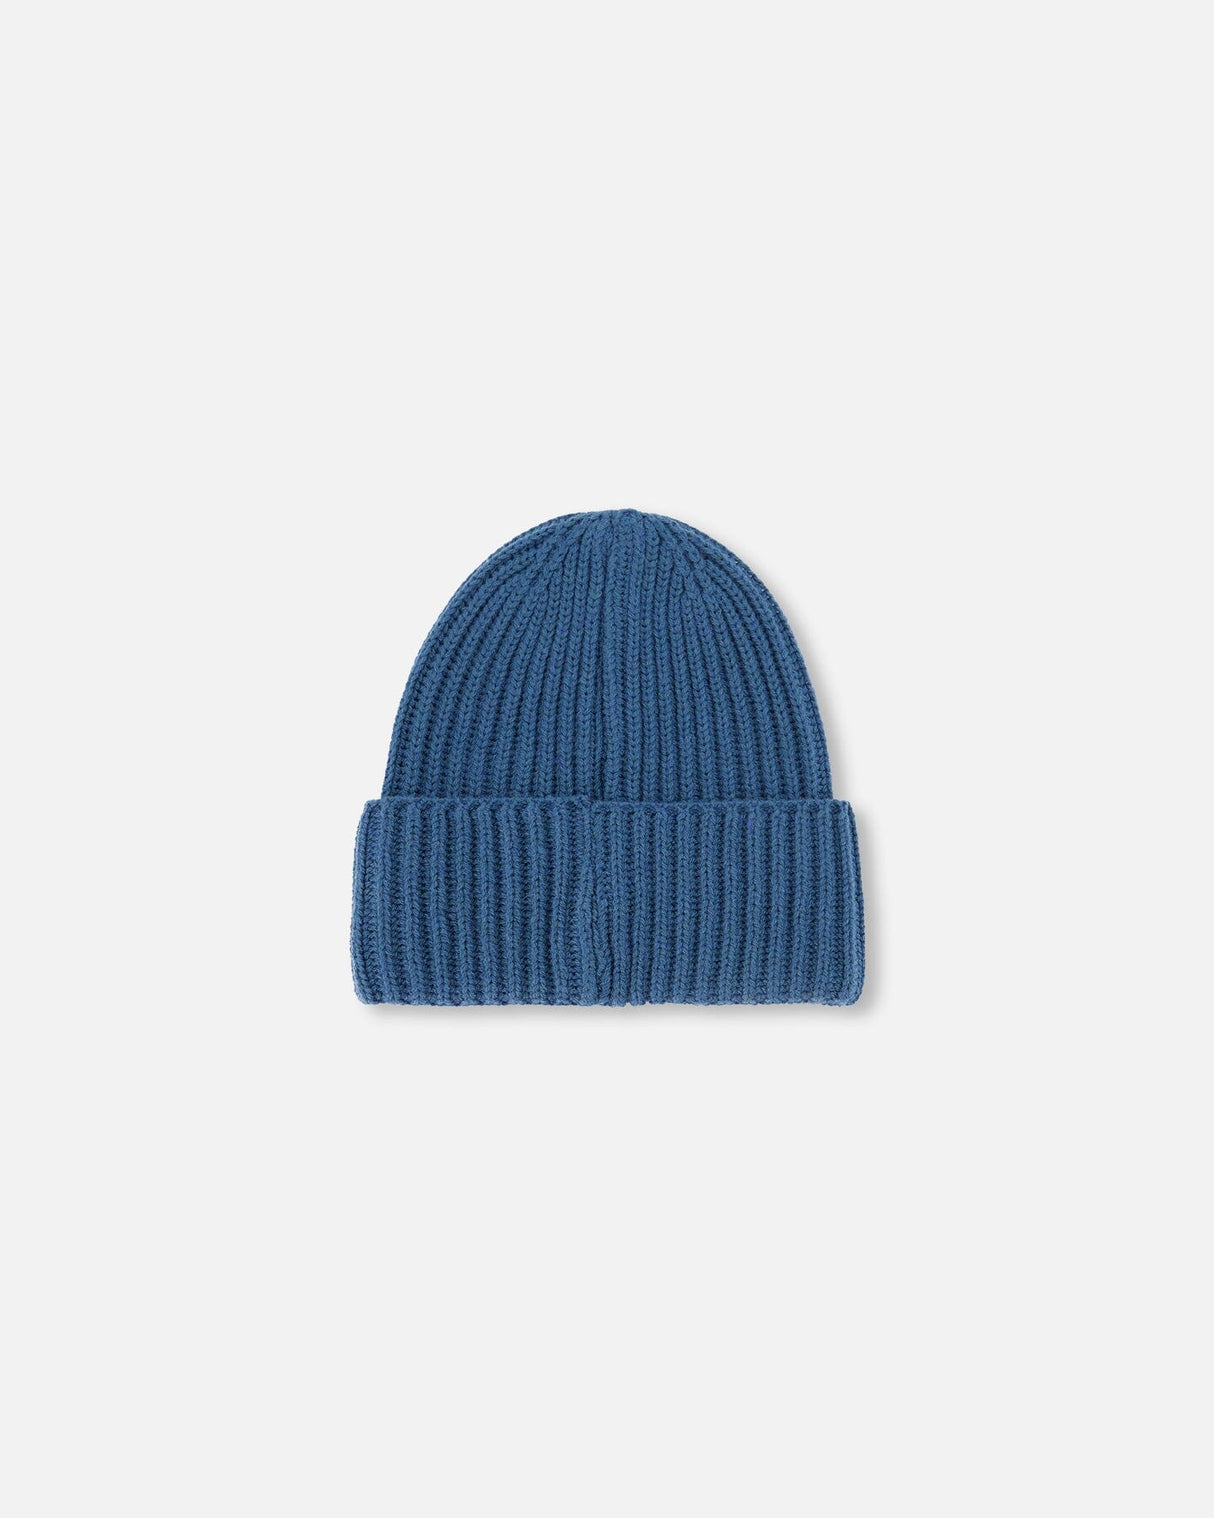 Knit Hat Teal Blue-3